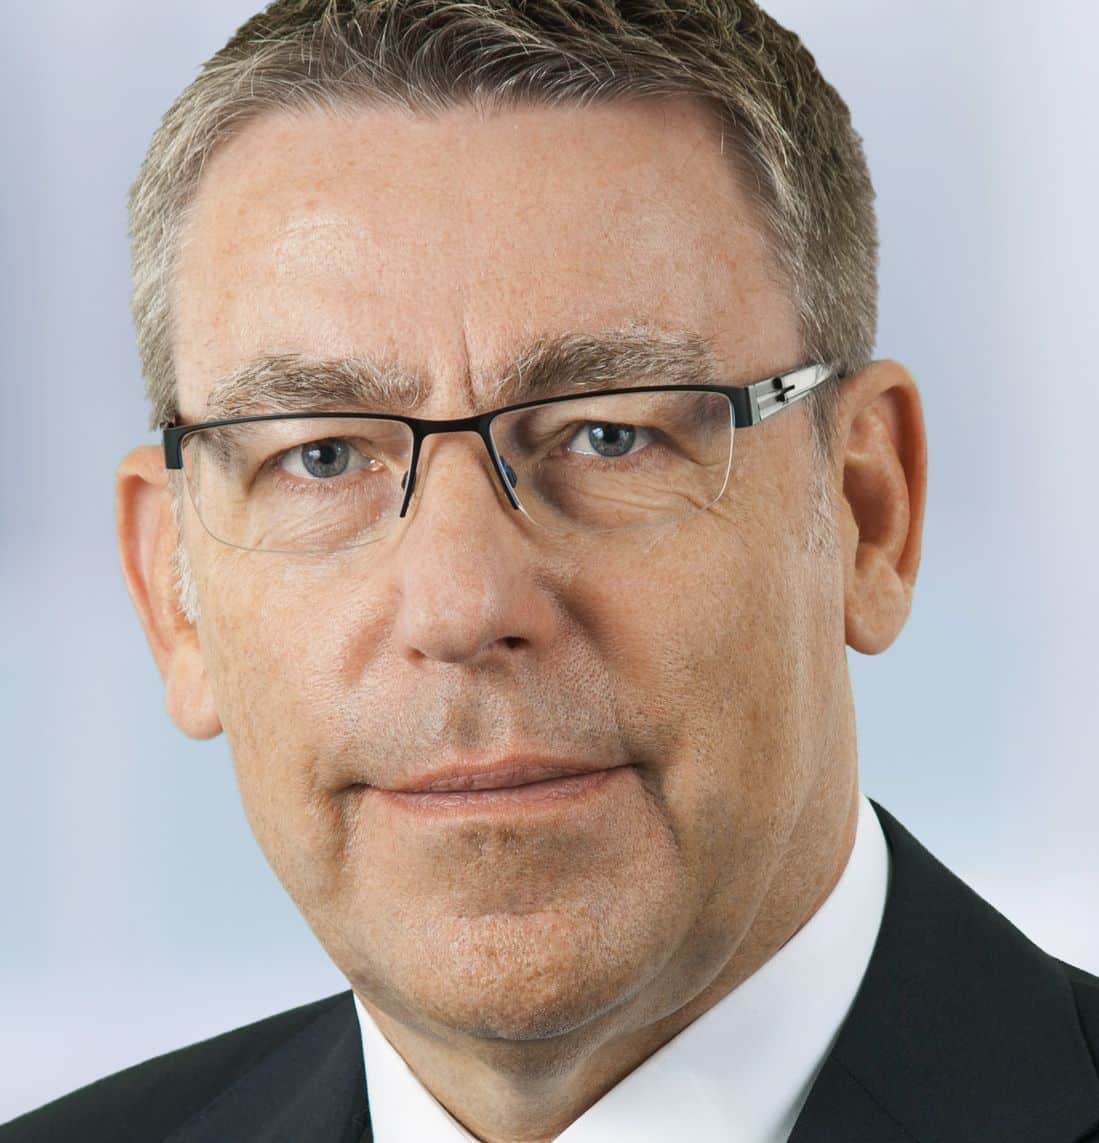 Dr. Dirk Scherp (c) Gleiss Lutz